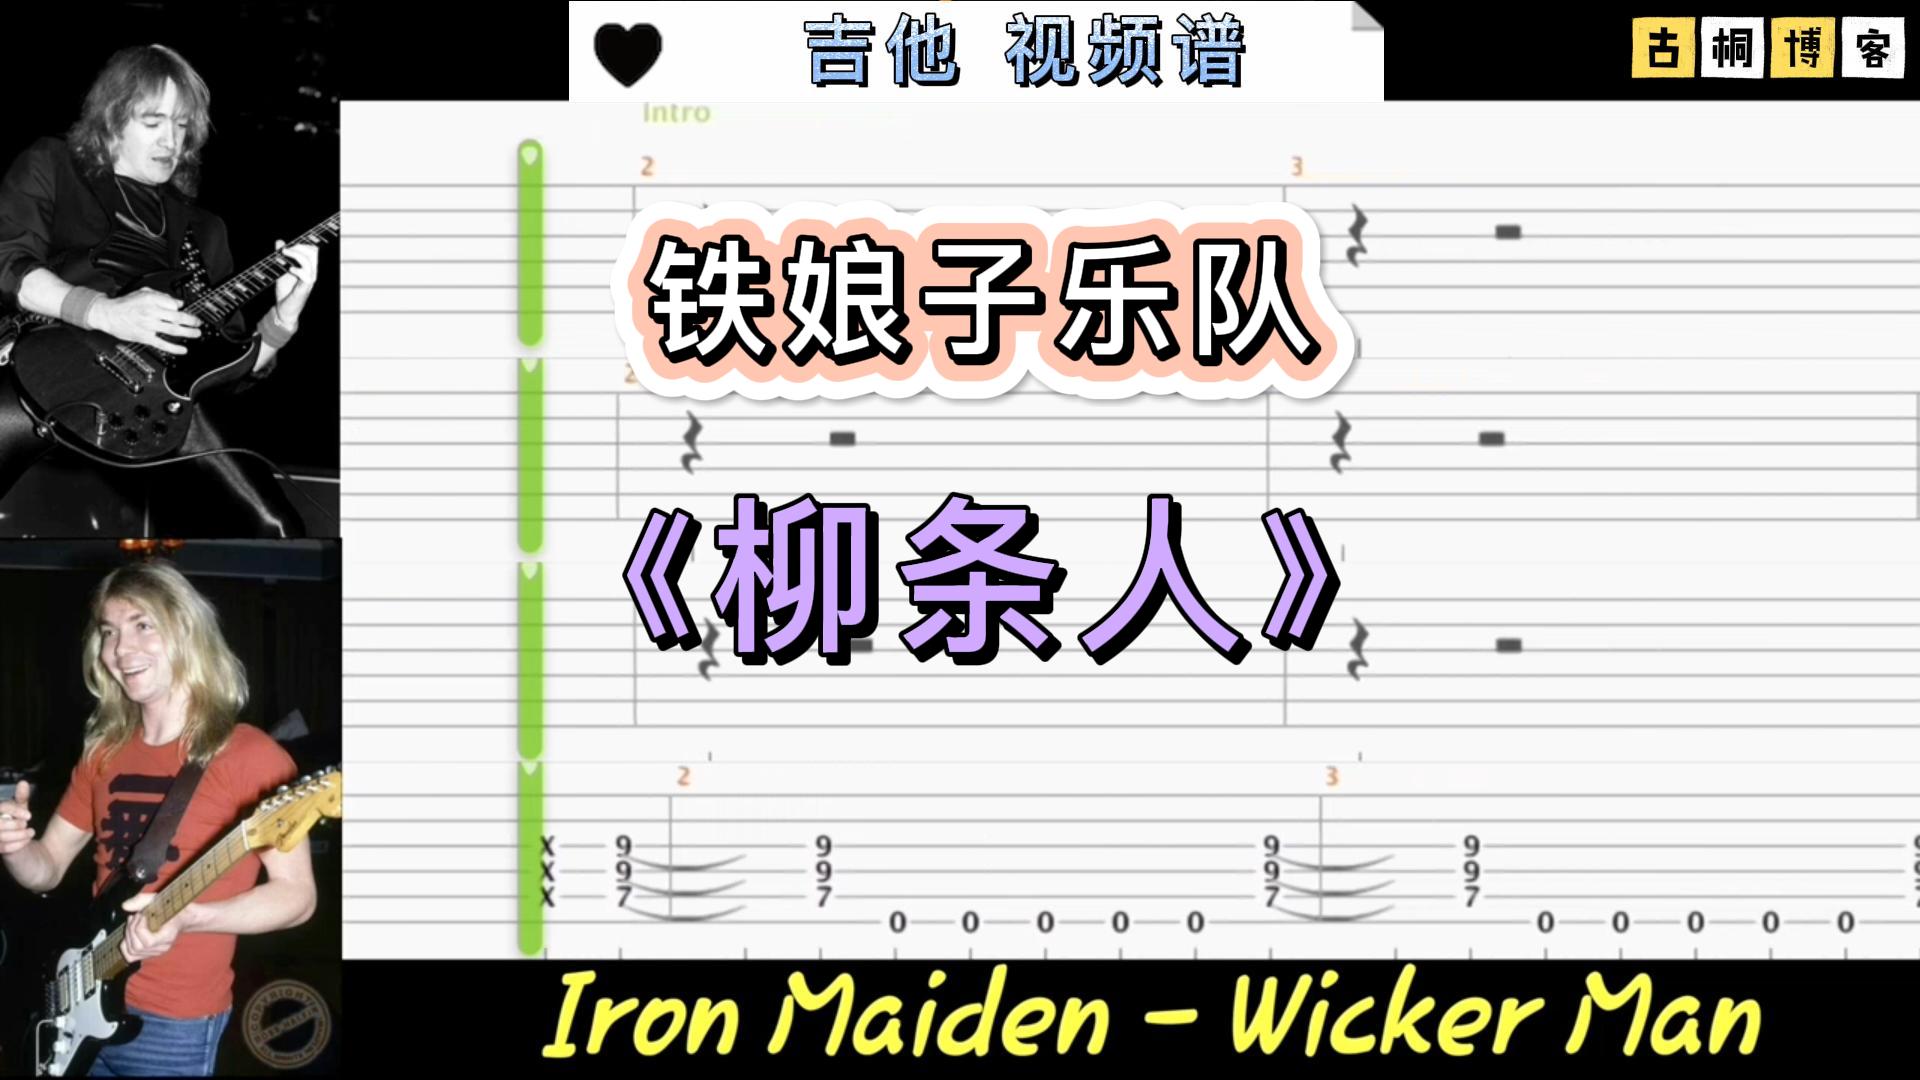 铁娘子乐队 经典 吉他视频谱《Wicker Man》-古桐博客